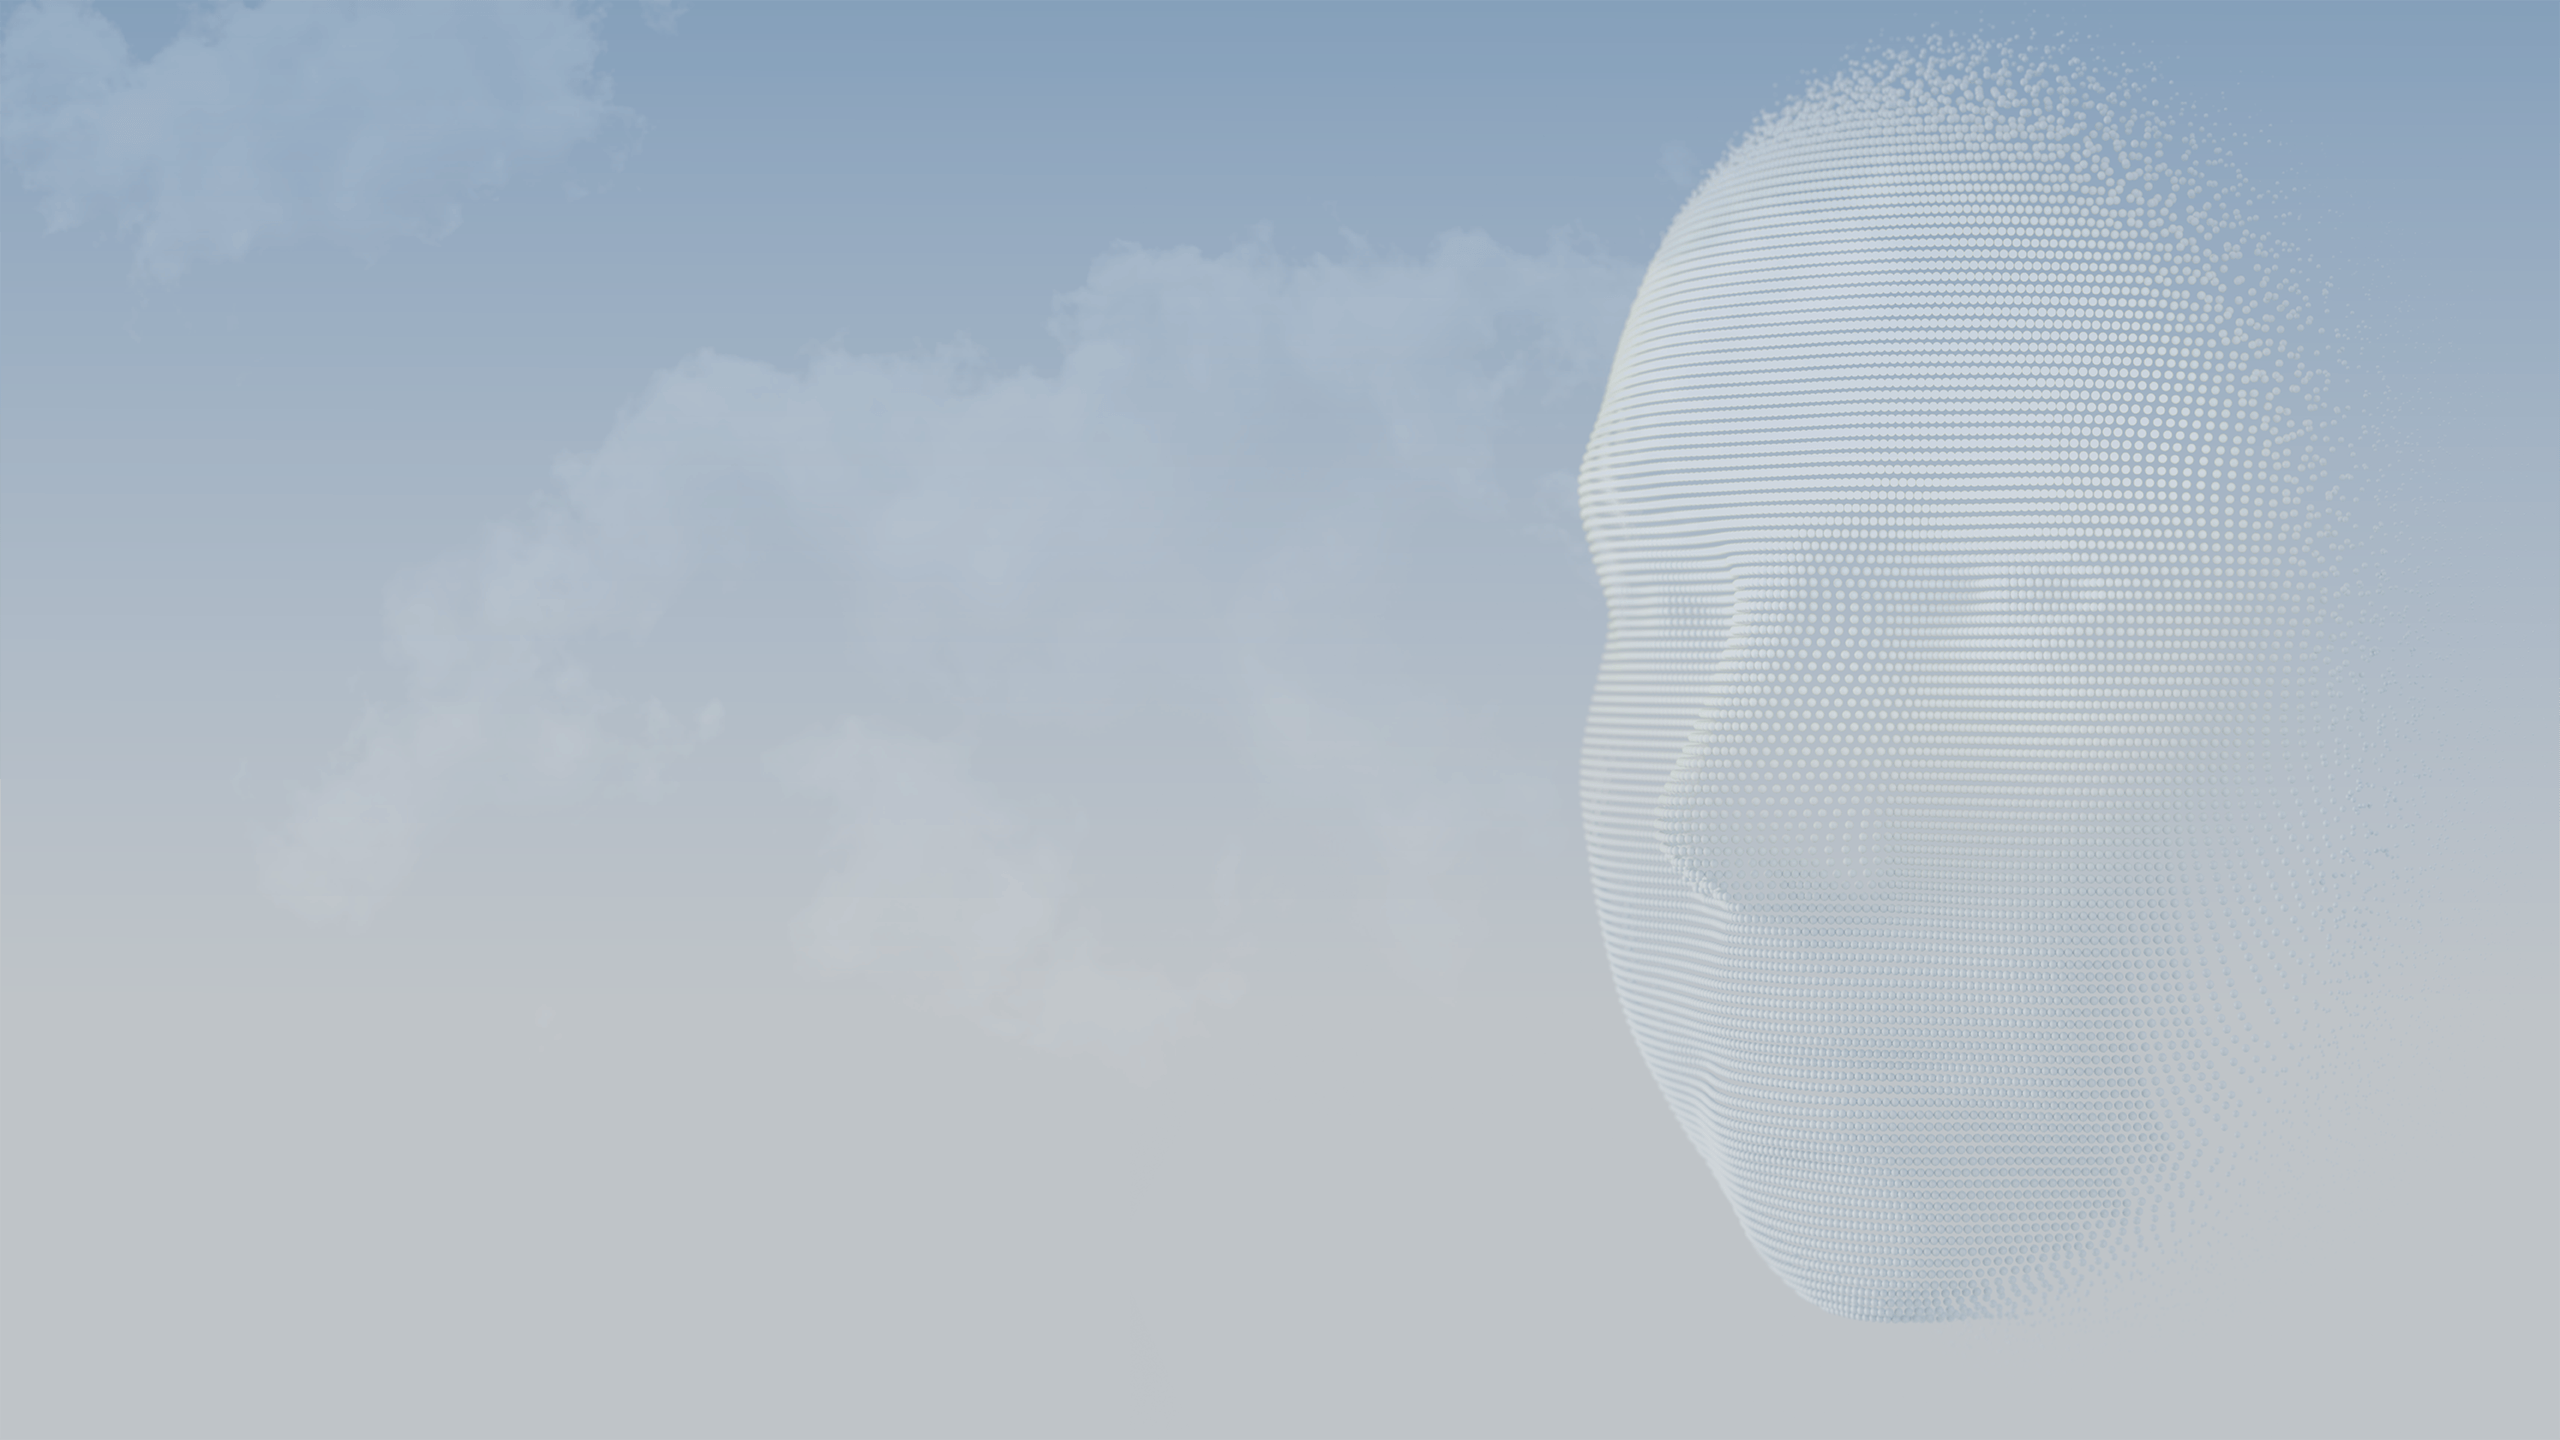 Unas esferas en 3D componen el rostro de una persona contra un cielo azul.